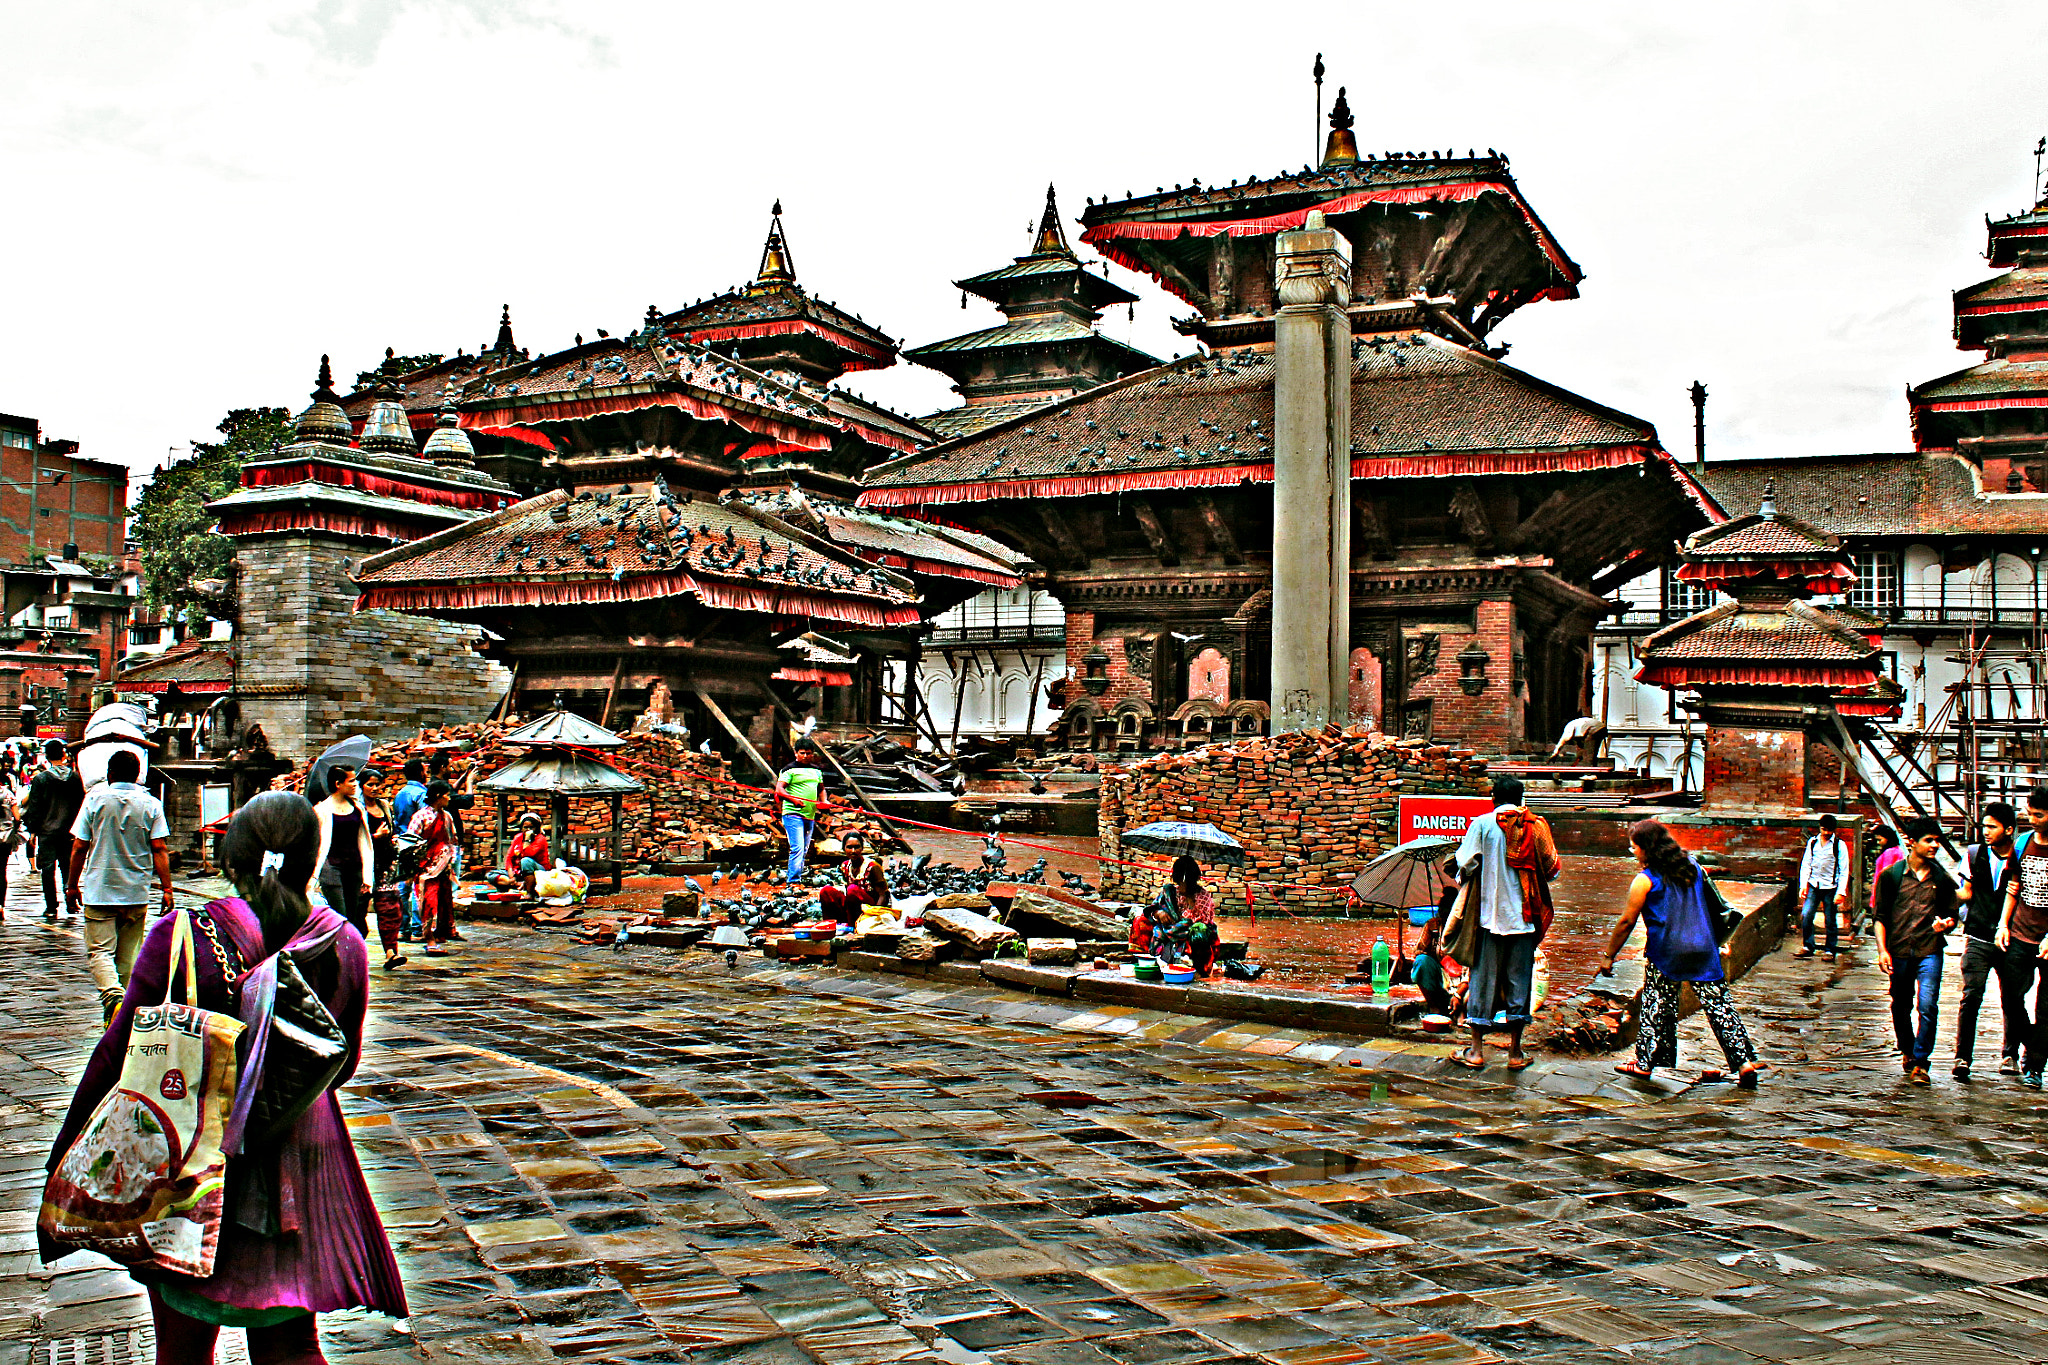 Canon EOS 1100D (EOS Rebel T3 / EOS Kiss X50) sample photo. Kathmandu durbar square earthquake photography